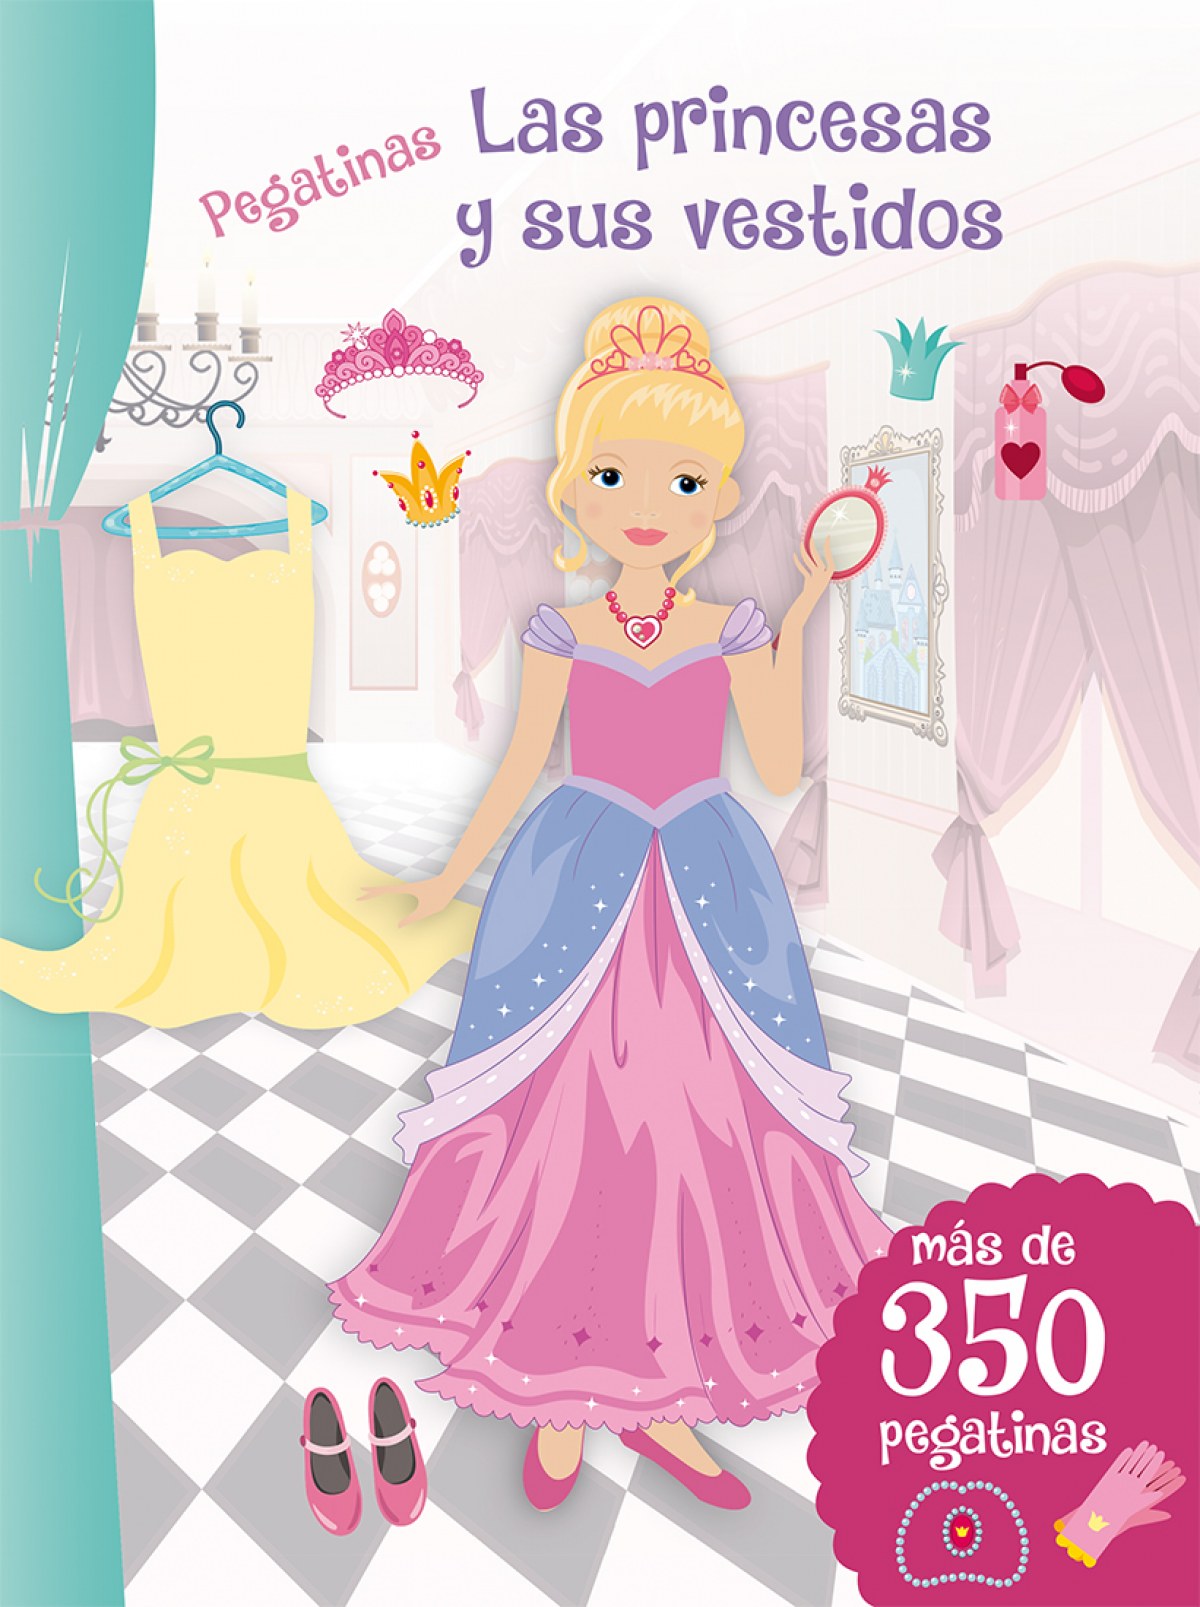 Las princesas y sus vestidos pegatinas - Vv.Aa.